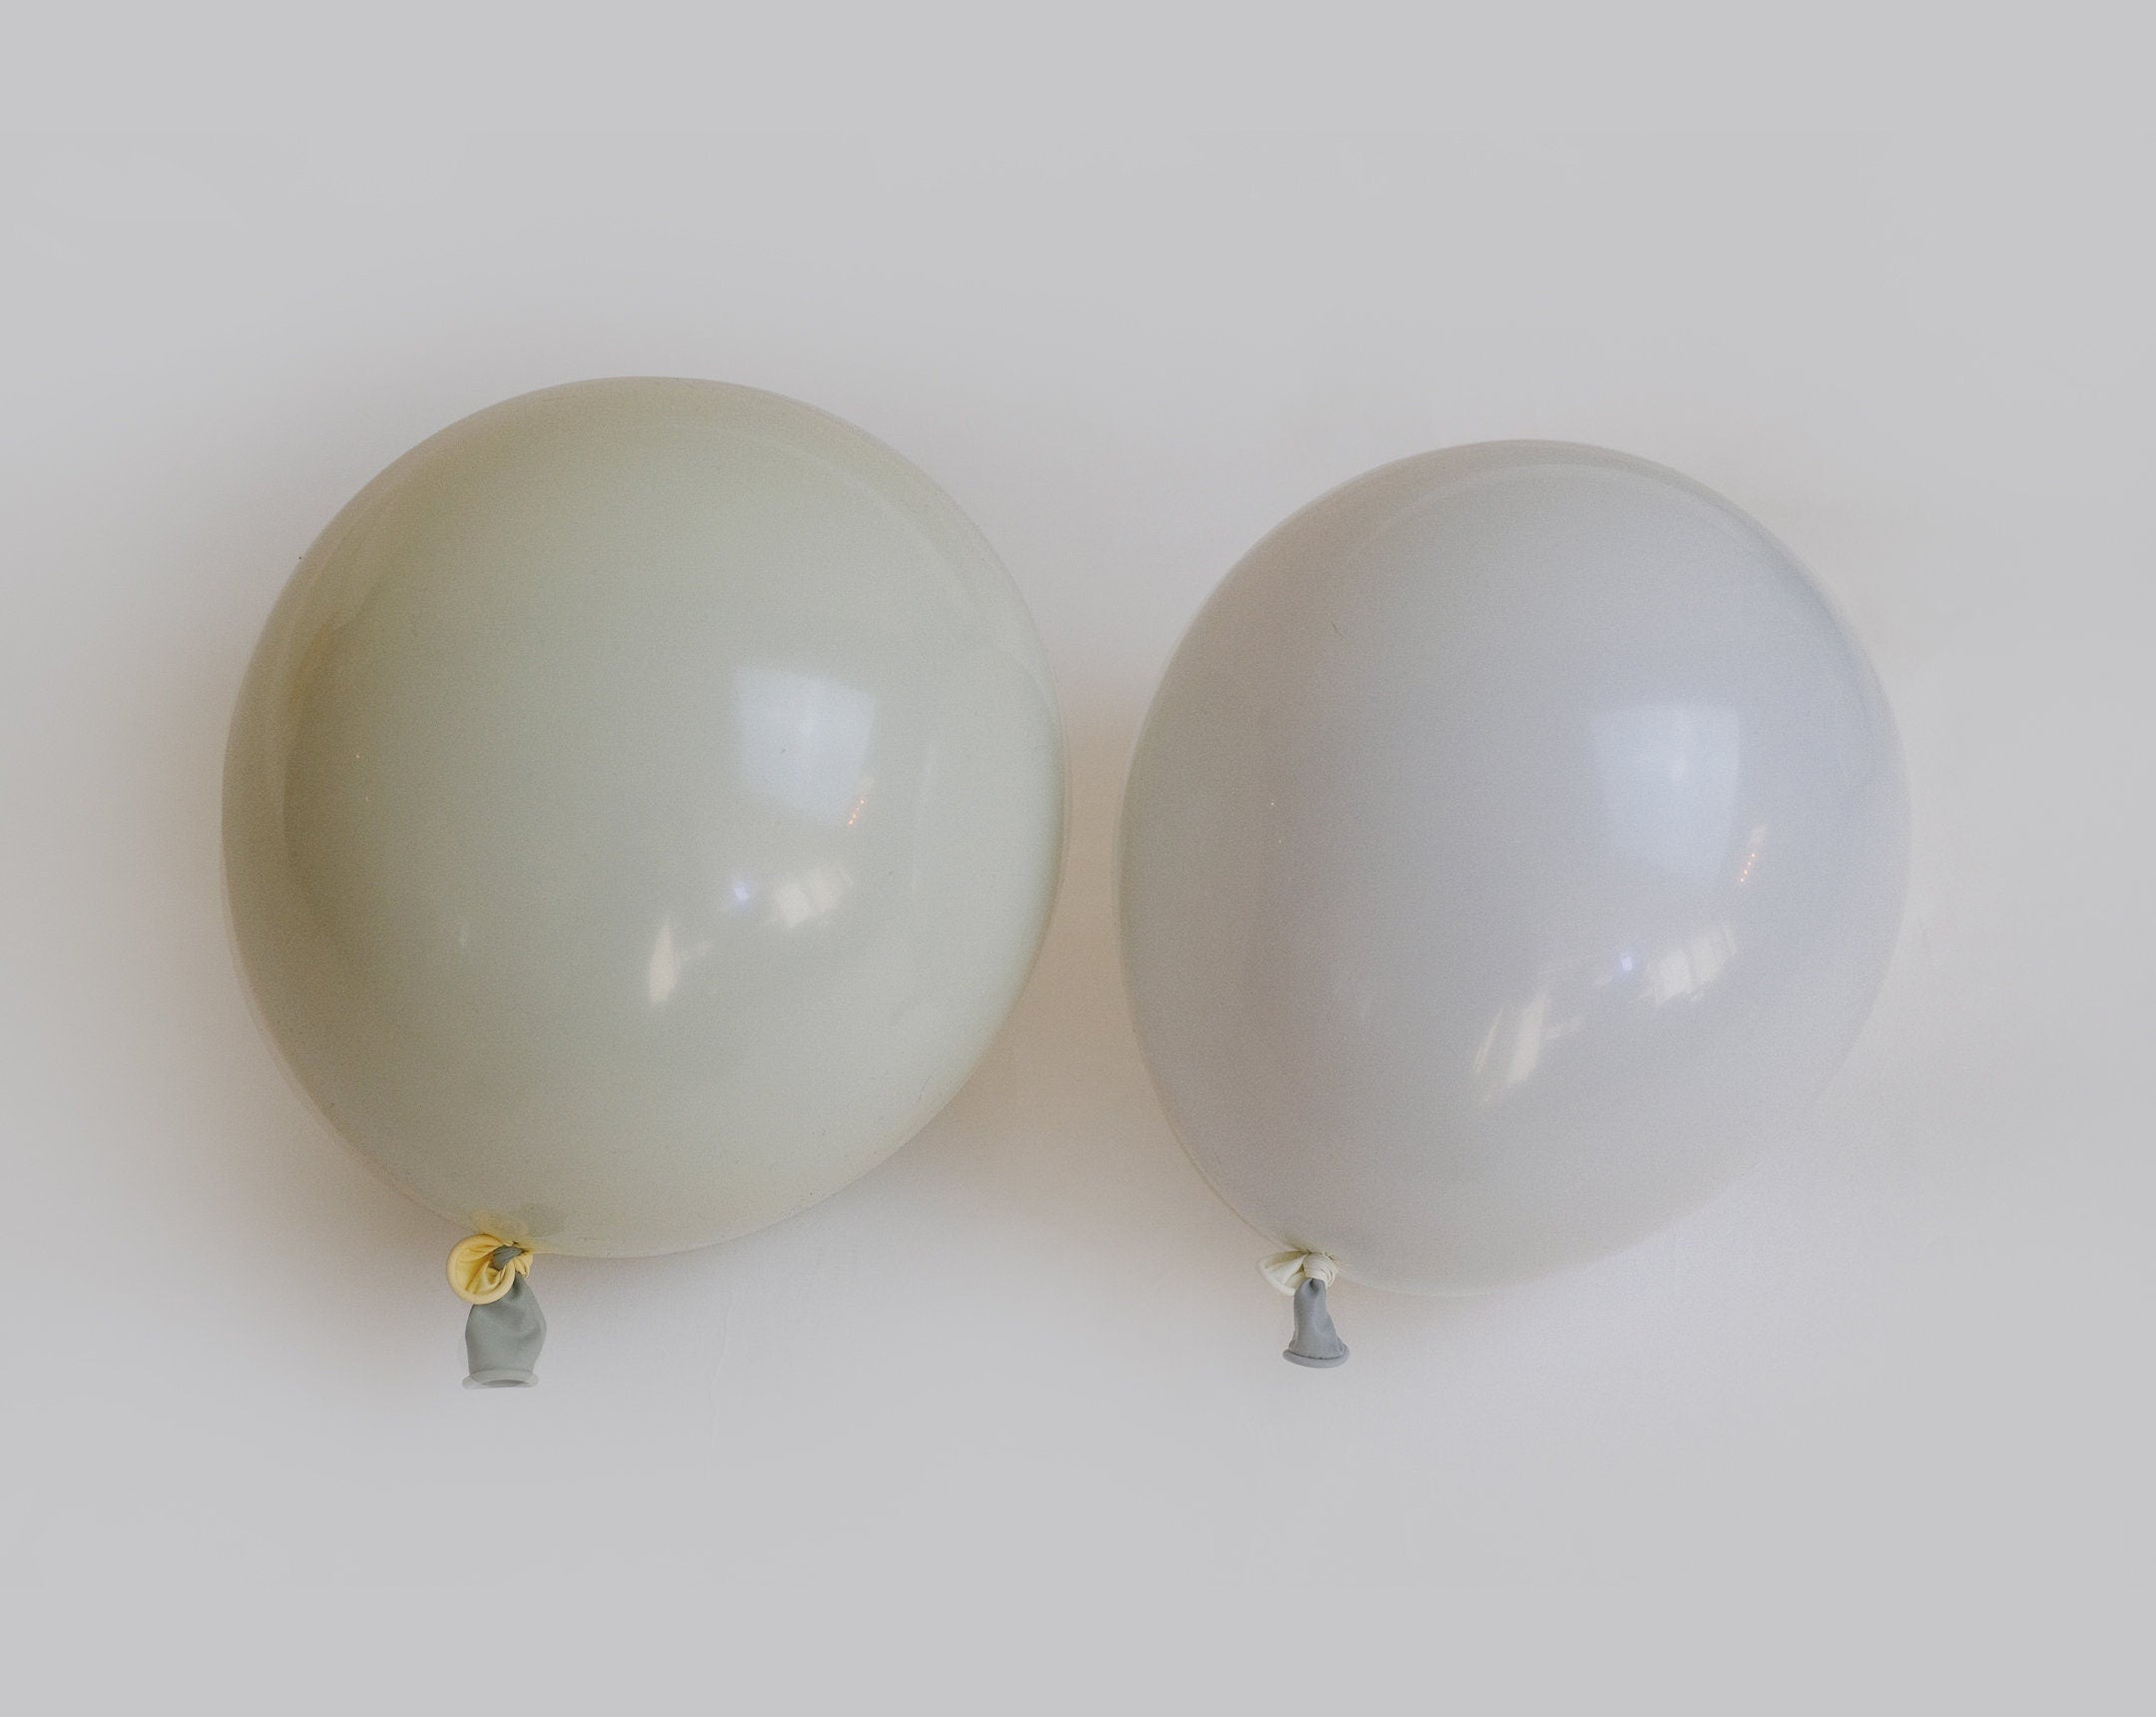 Double layered Stuffed Boho neutral minimalism balloon garland